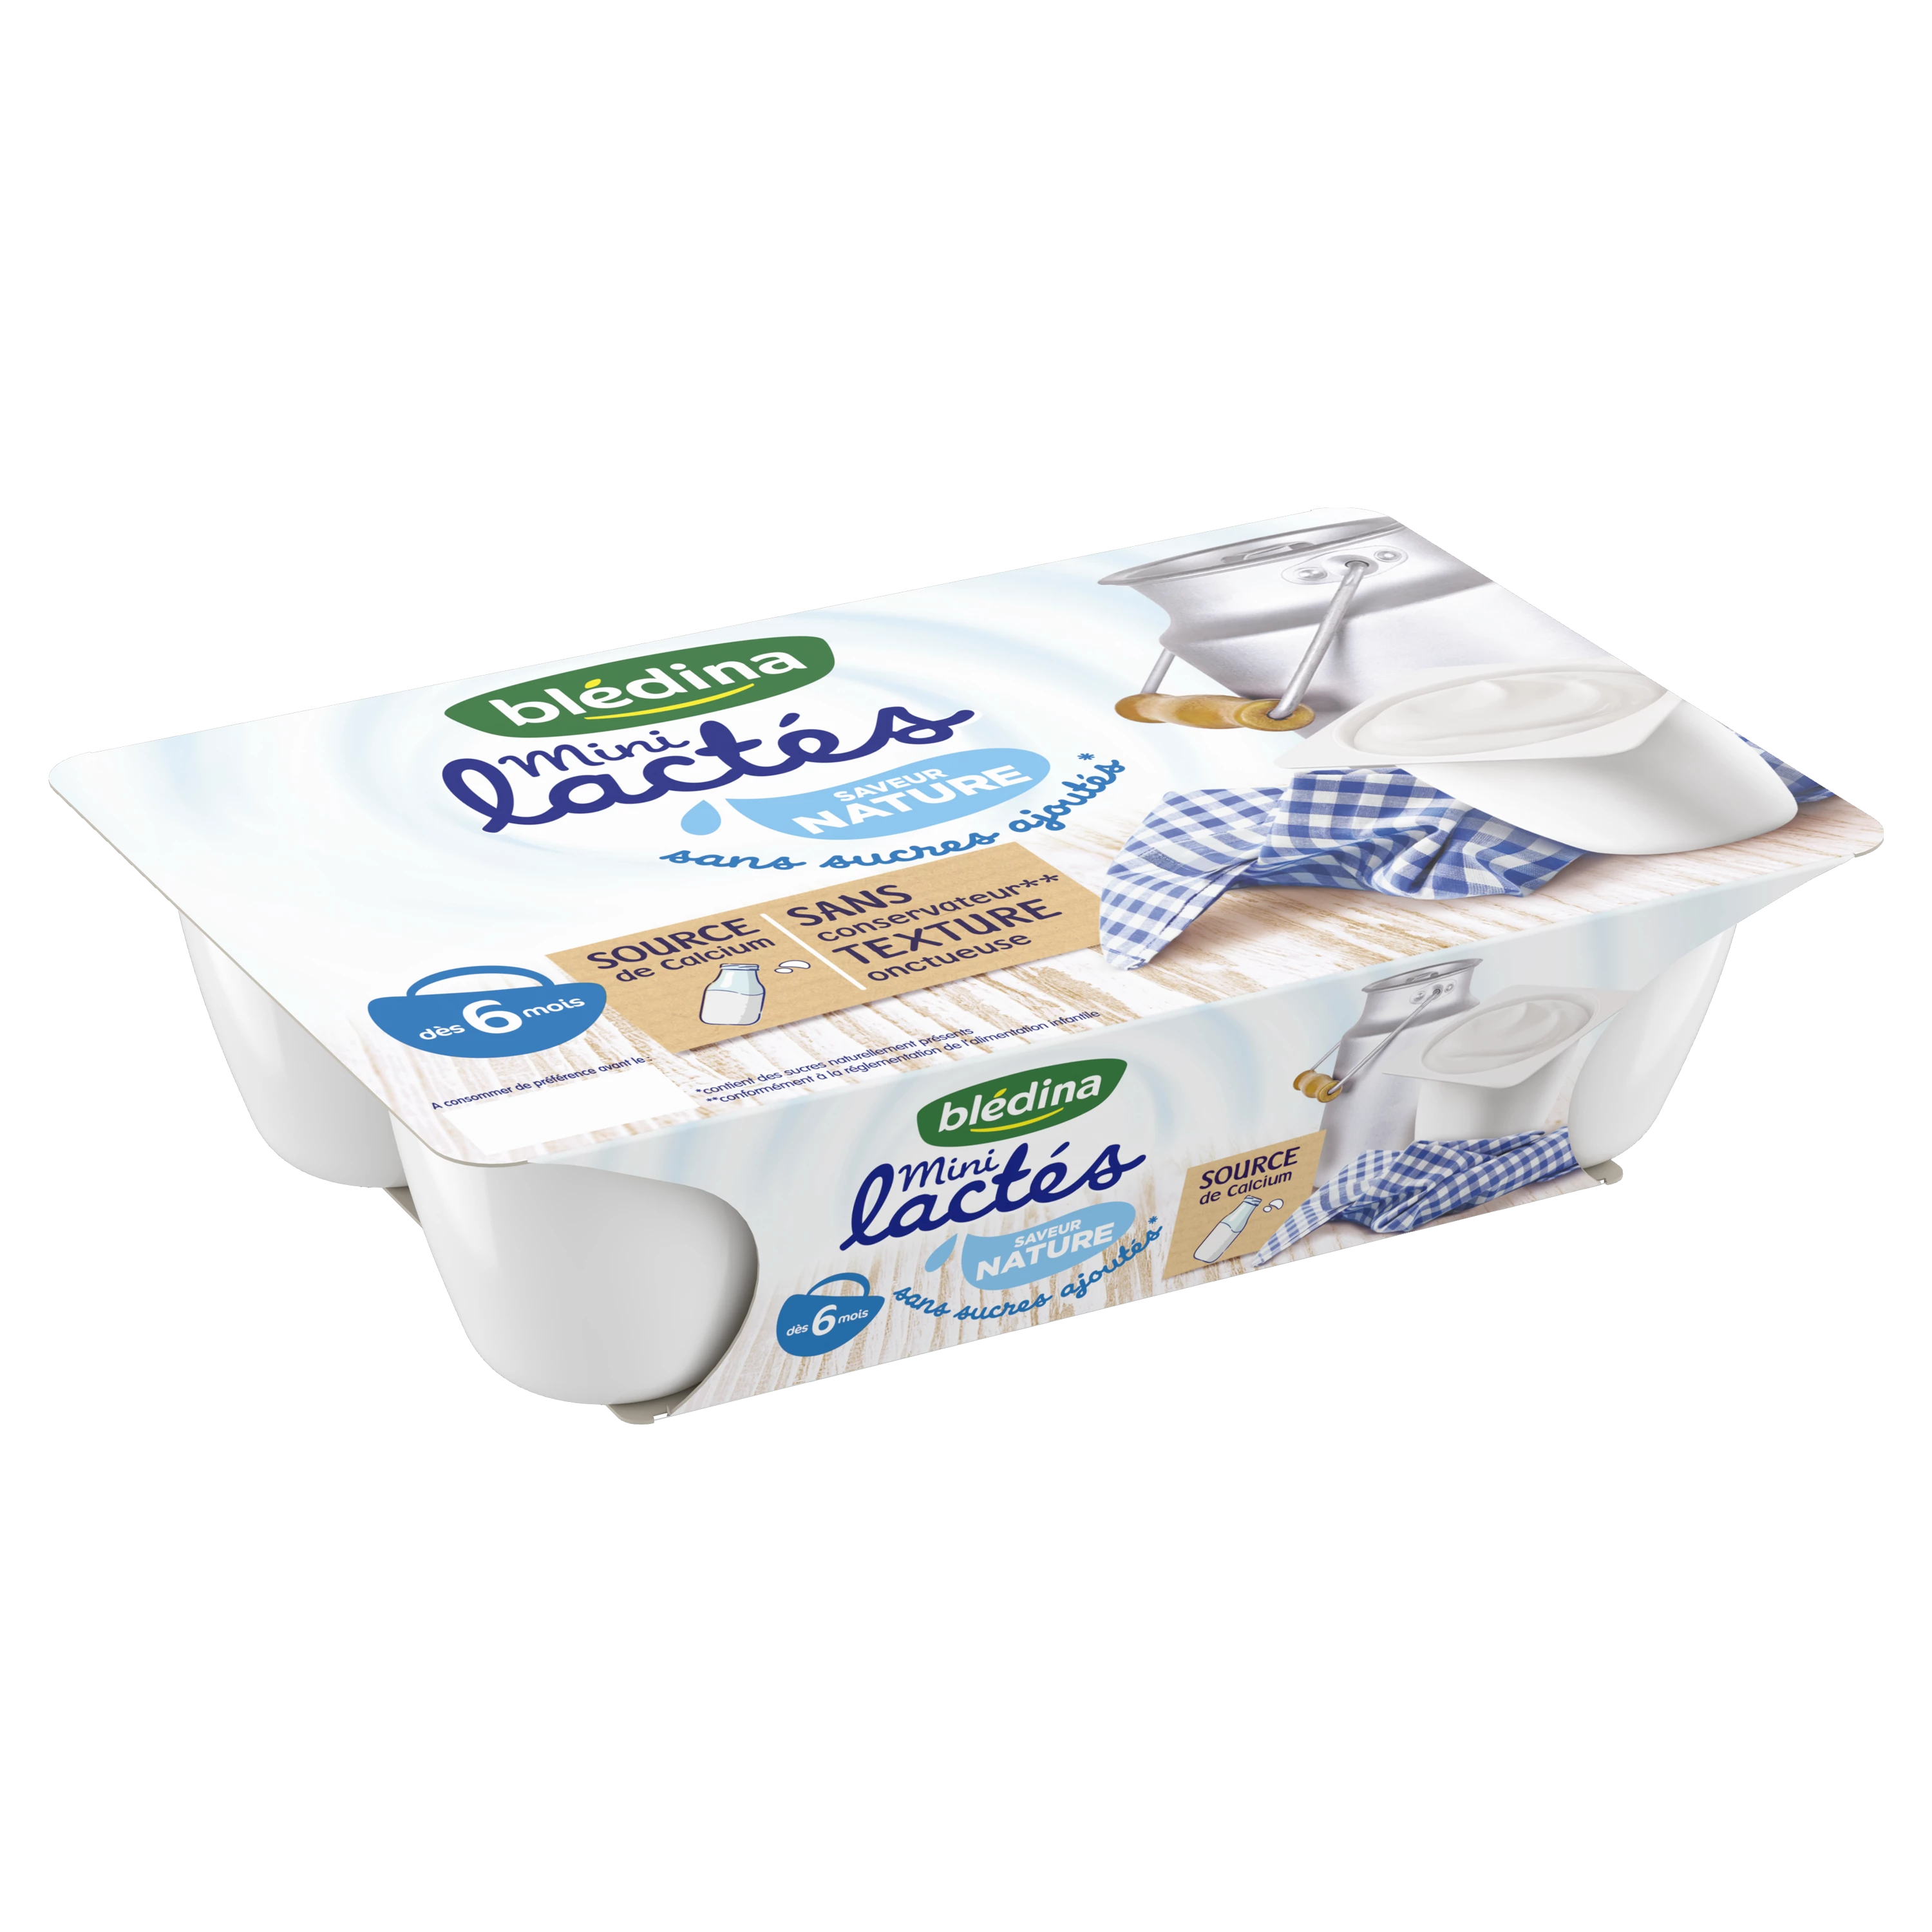 砂糖不使用のナチュラルミニ乳製品ベビーデザート 6ヵ月から 55g×6個 - BLEDINA